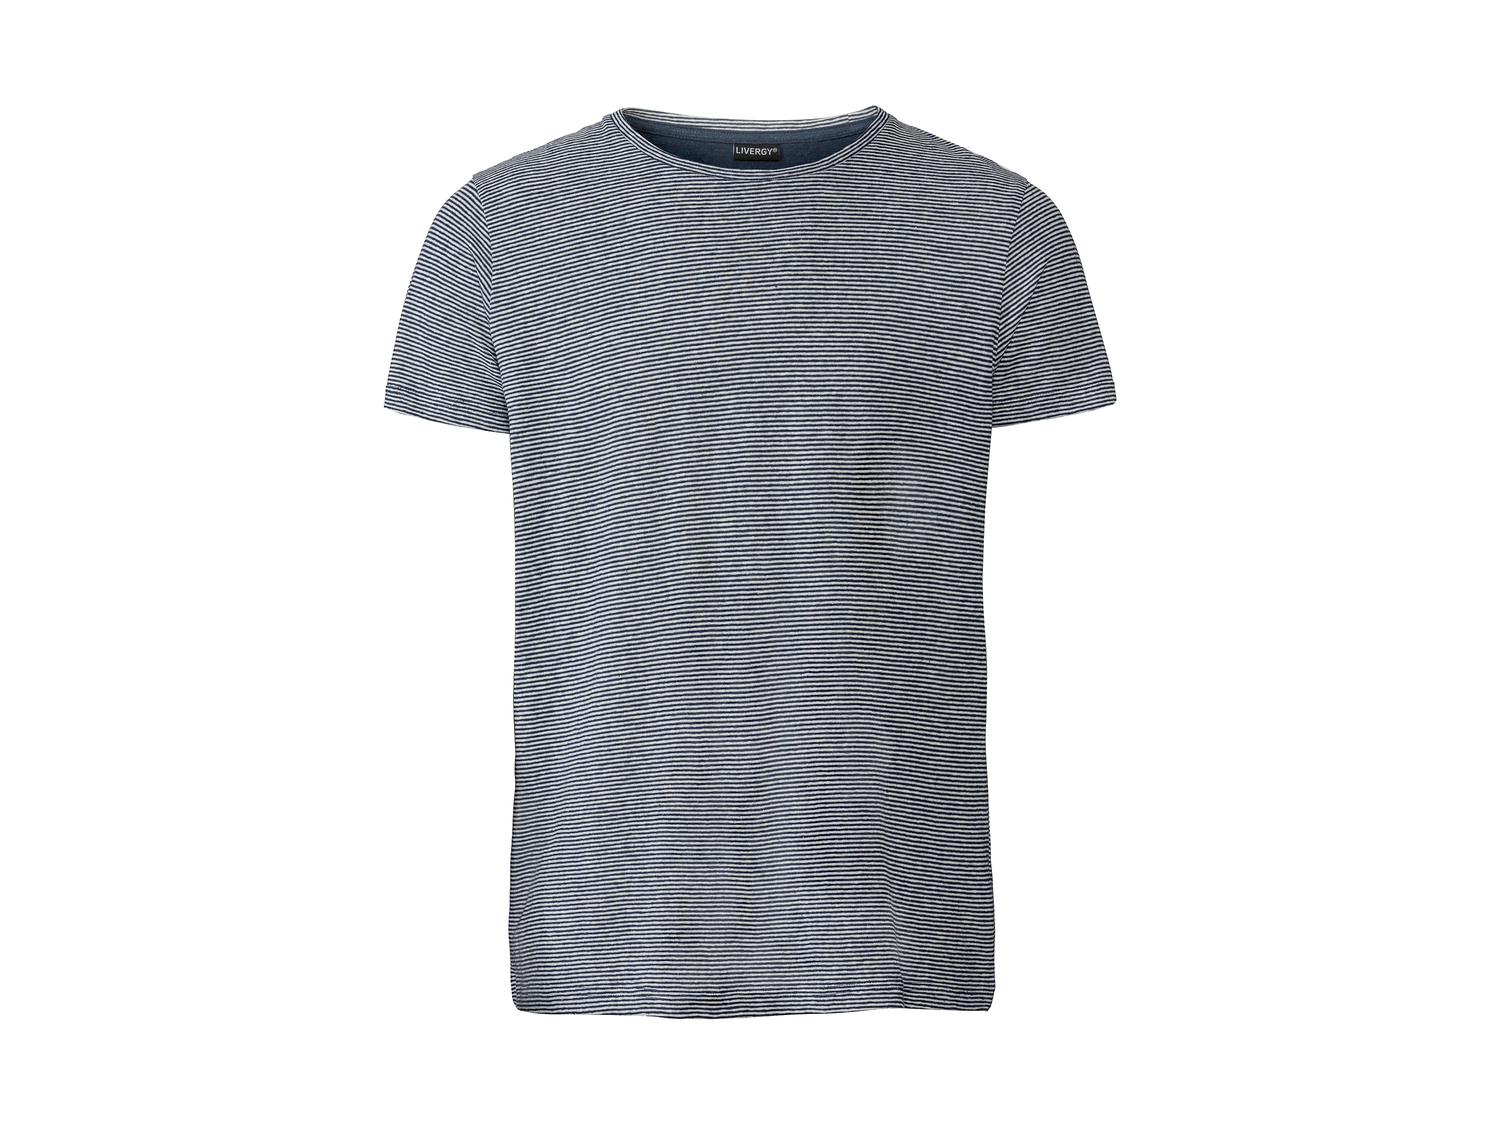 T-shirt en lin , le prix 6.99 € 
- Du S au XL selon modèle.
- Ex. 53 % lin ...